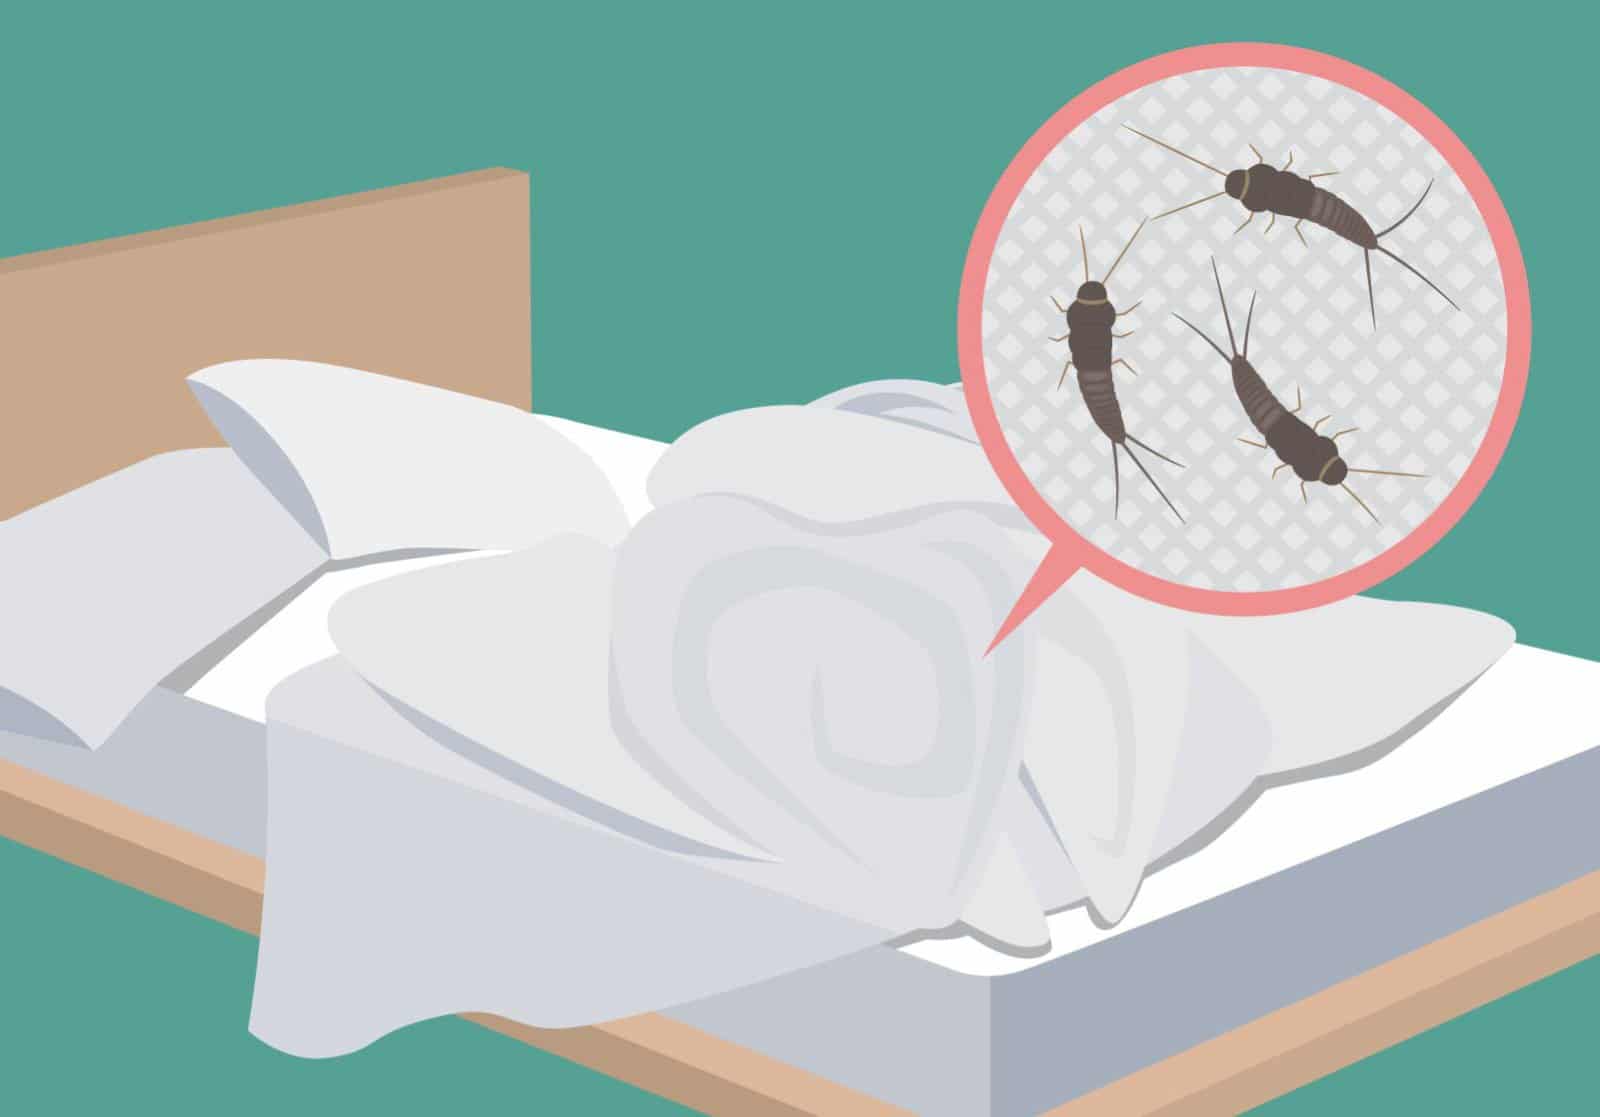 Silberfische im Bett: Es sind kleine ungefährliche, flügellose und nachtaktive Insekten.